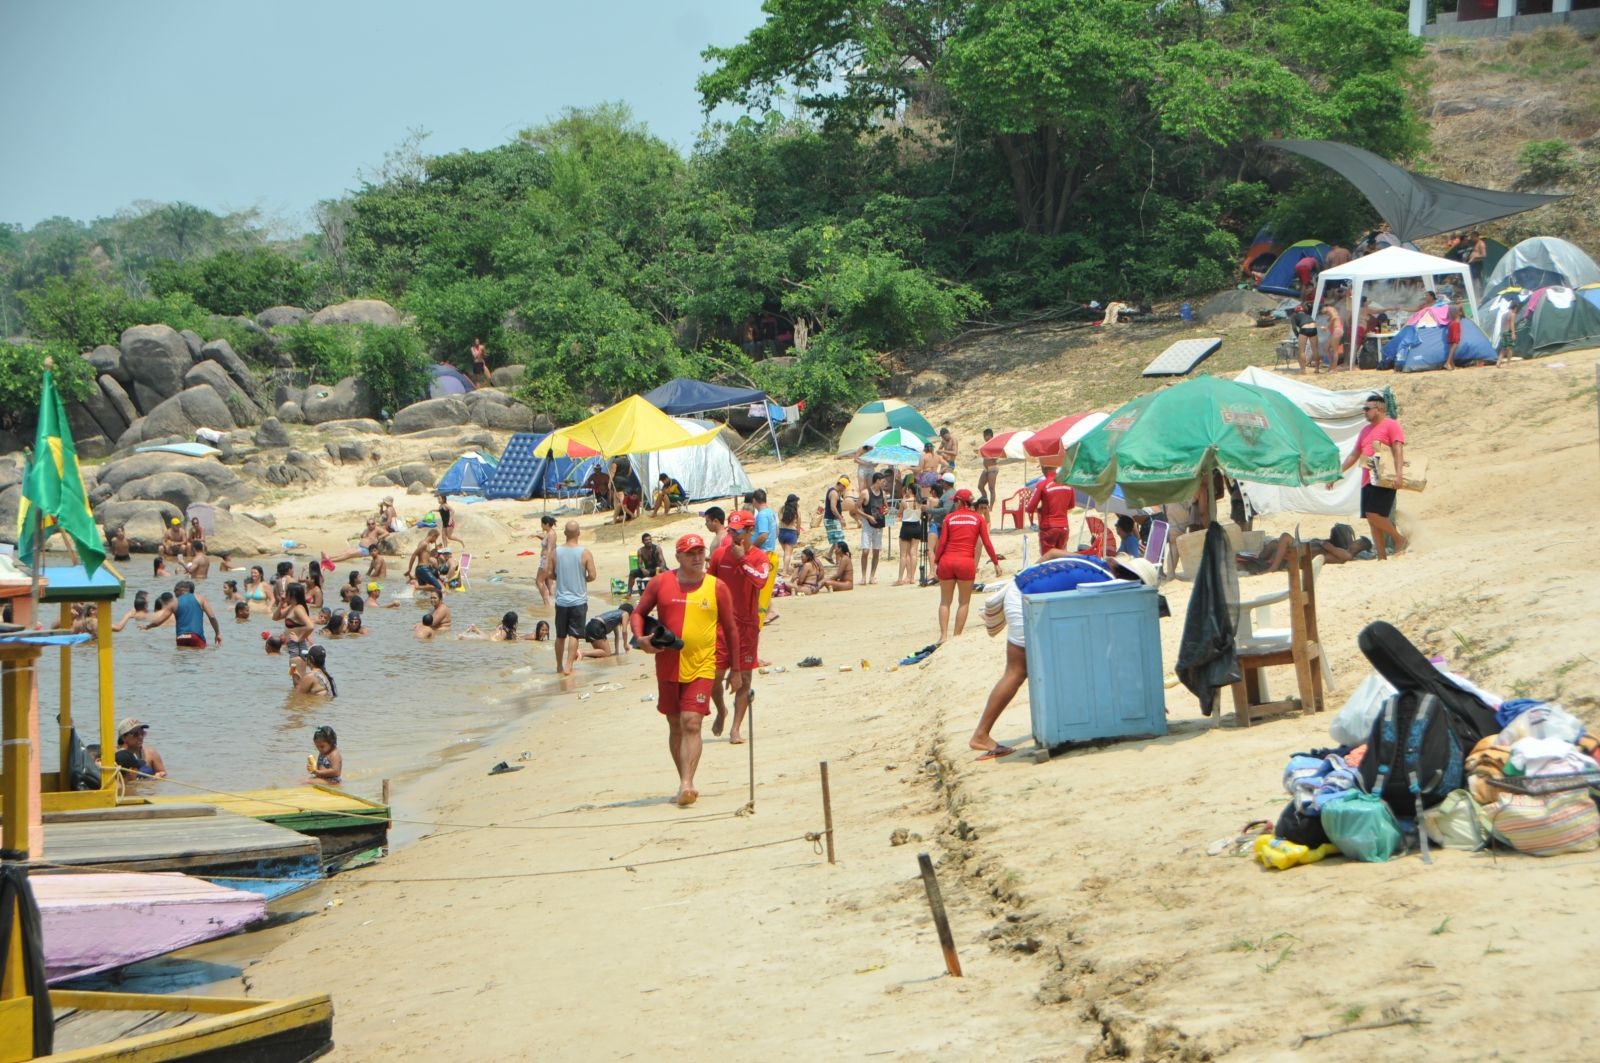 ENQUETE: Qual o melhor festival de praia em Rondônia?